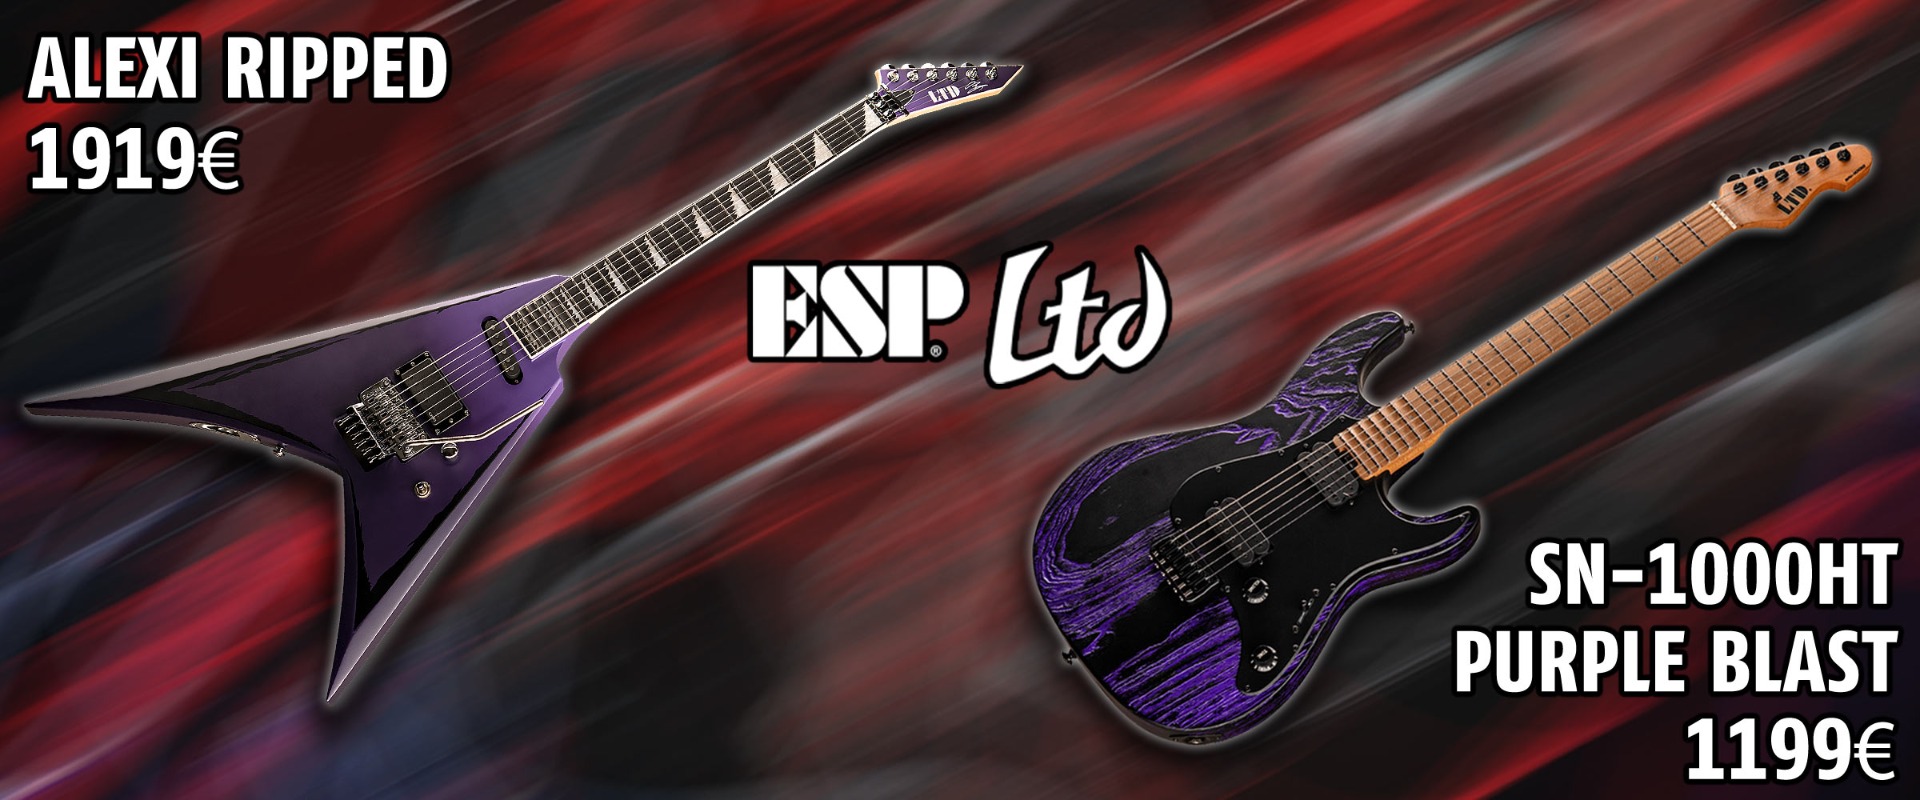 Top quality ESP LTD guitars!